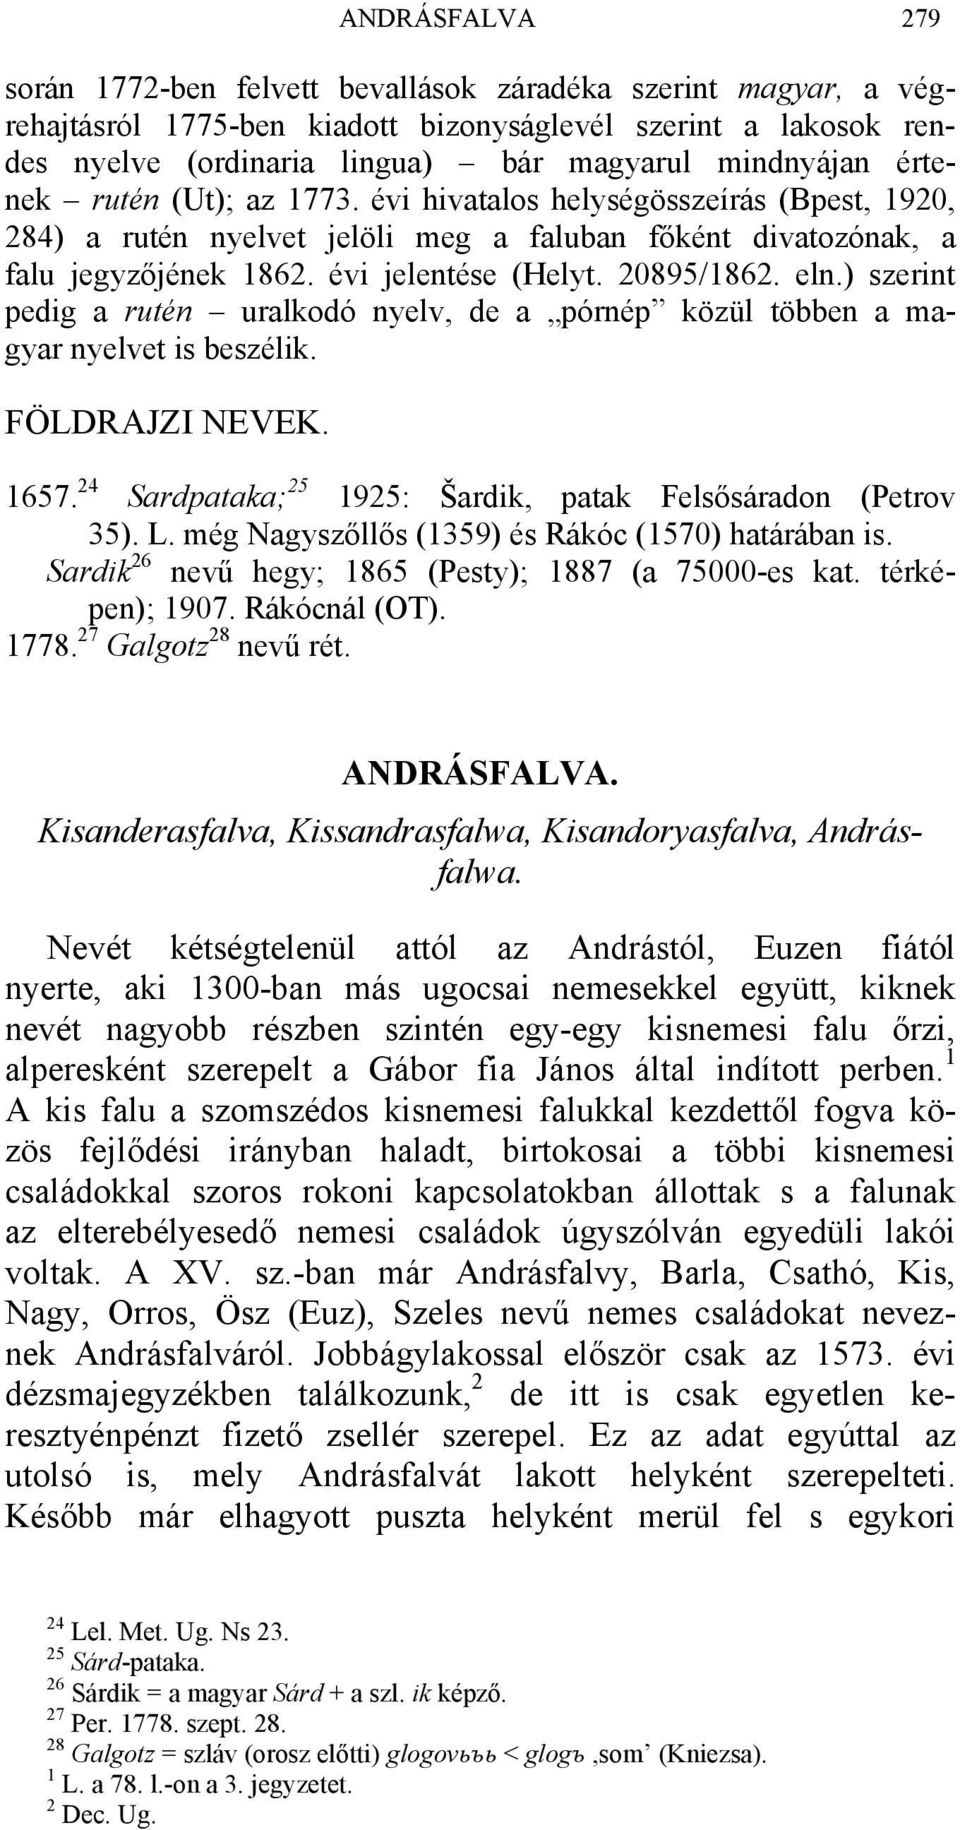 ) szerint pedig a rutén uralkodó nyelv, de a pórnép közül többen a magyar nyelvet is beszélik. FÖLDRAJZI NEVEK. 1657. 24 Sardpataka; 25 1925: Šardik, patak Felsősáradon (Petrov 35). L.